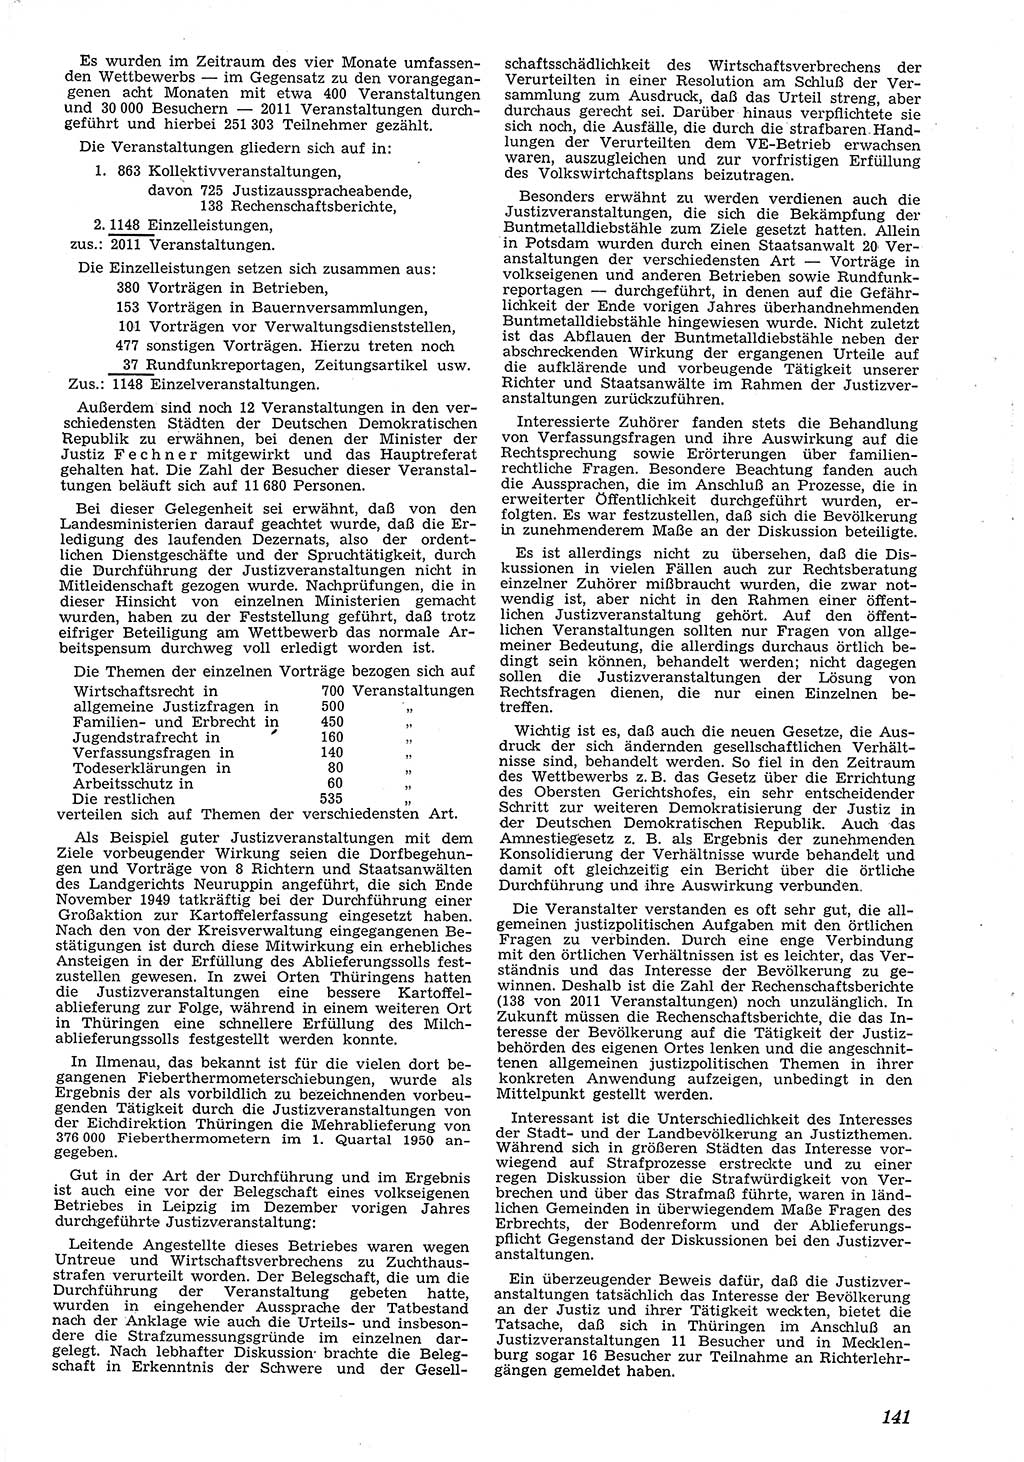 Neue Justiz (NJ), Zeitschrift für Recht und Rechtswissenschaft [Deutsche Demokratische Republik (DDR)], 4. Jahrgang 1950, Seite 141 (NJ DDR 1950, S. 141)